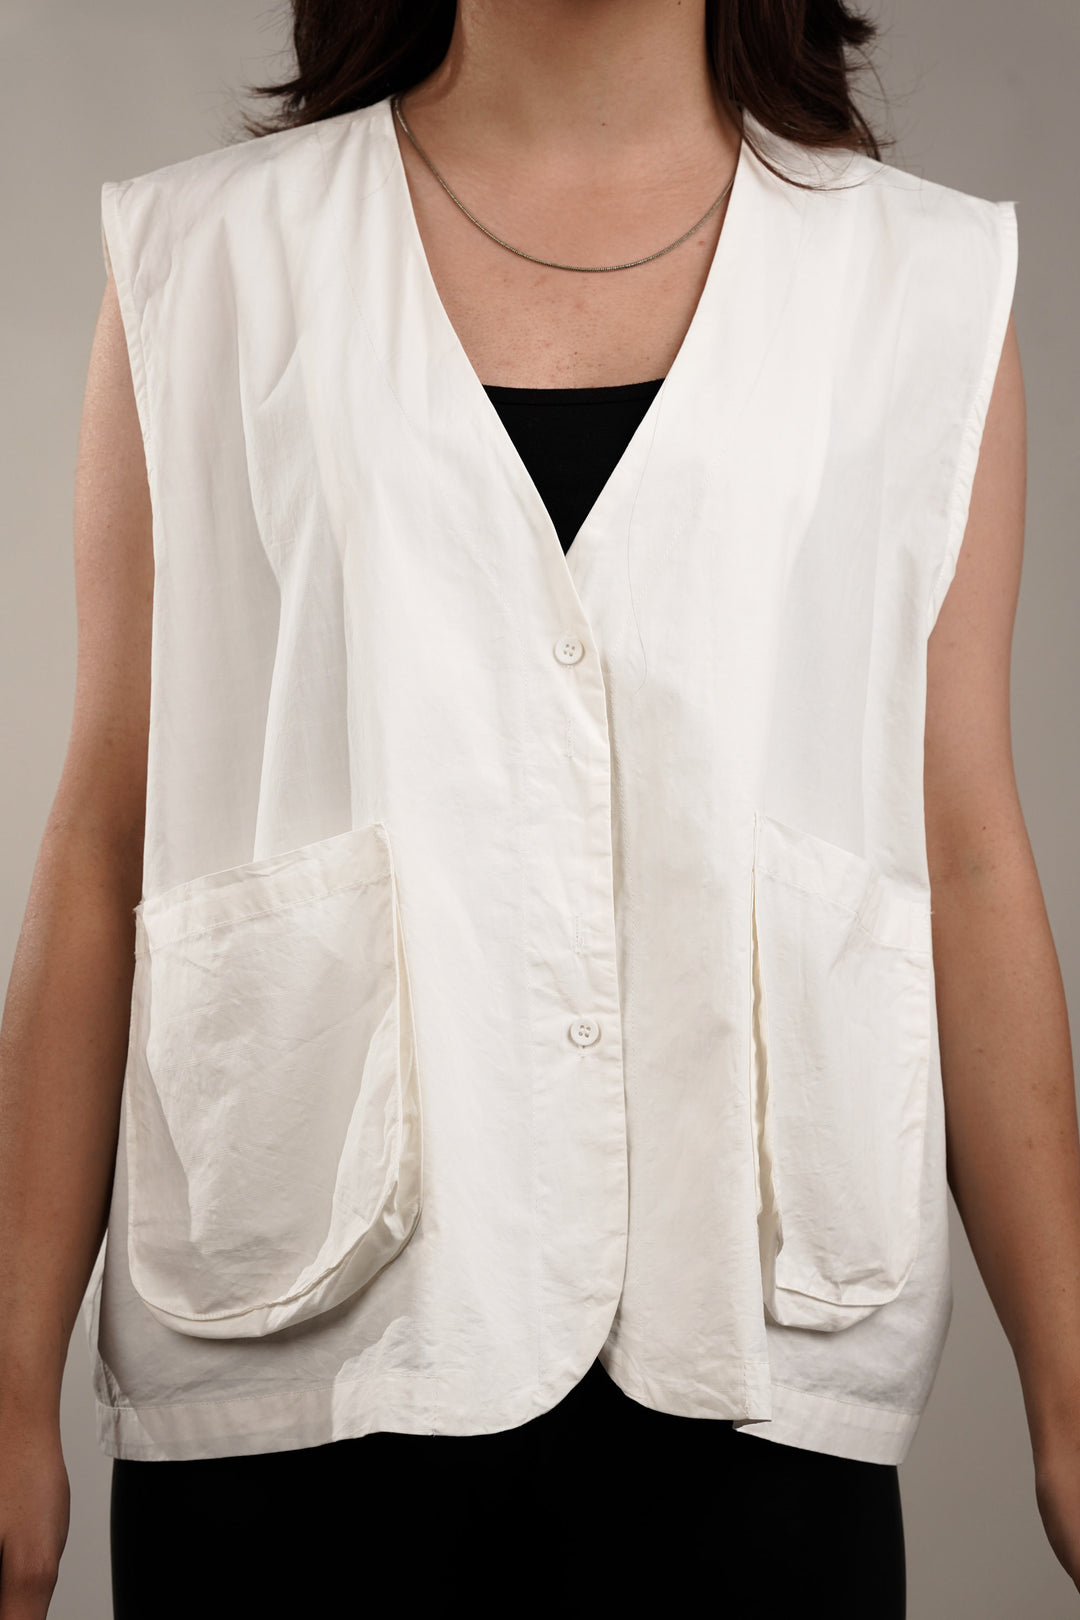 Oversized white cotton vest for women